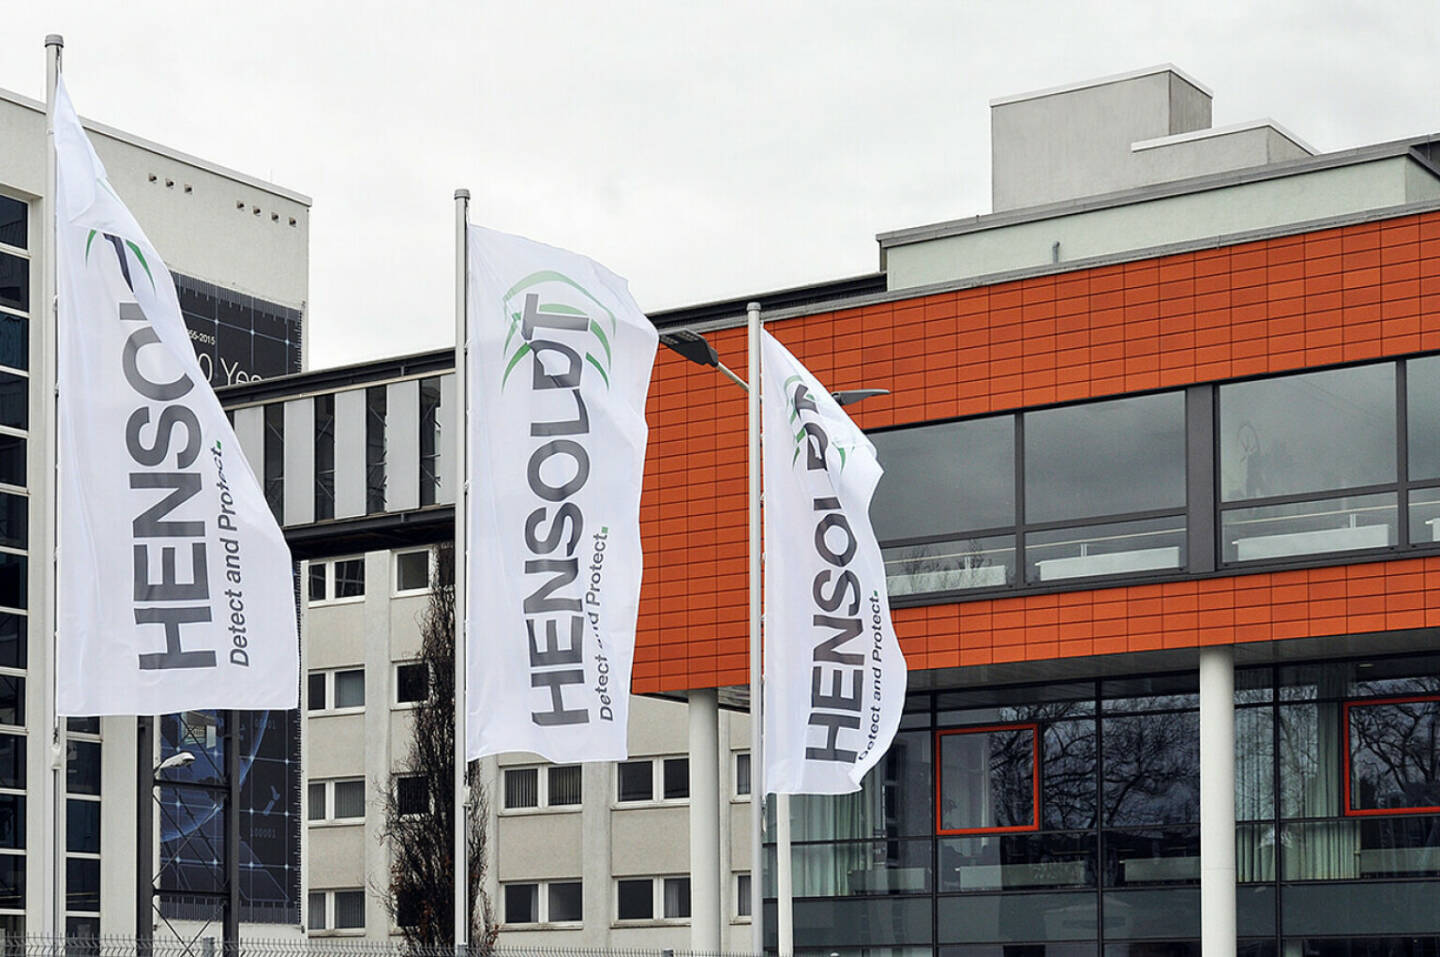 Sicherheits-Elektronik-Hersteller Hensoldt mit Börsengang in Frankfurt - Bildquelle: Hensoldt.net